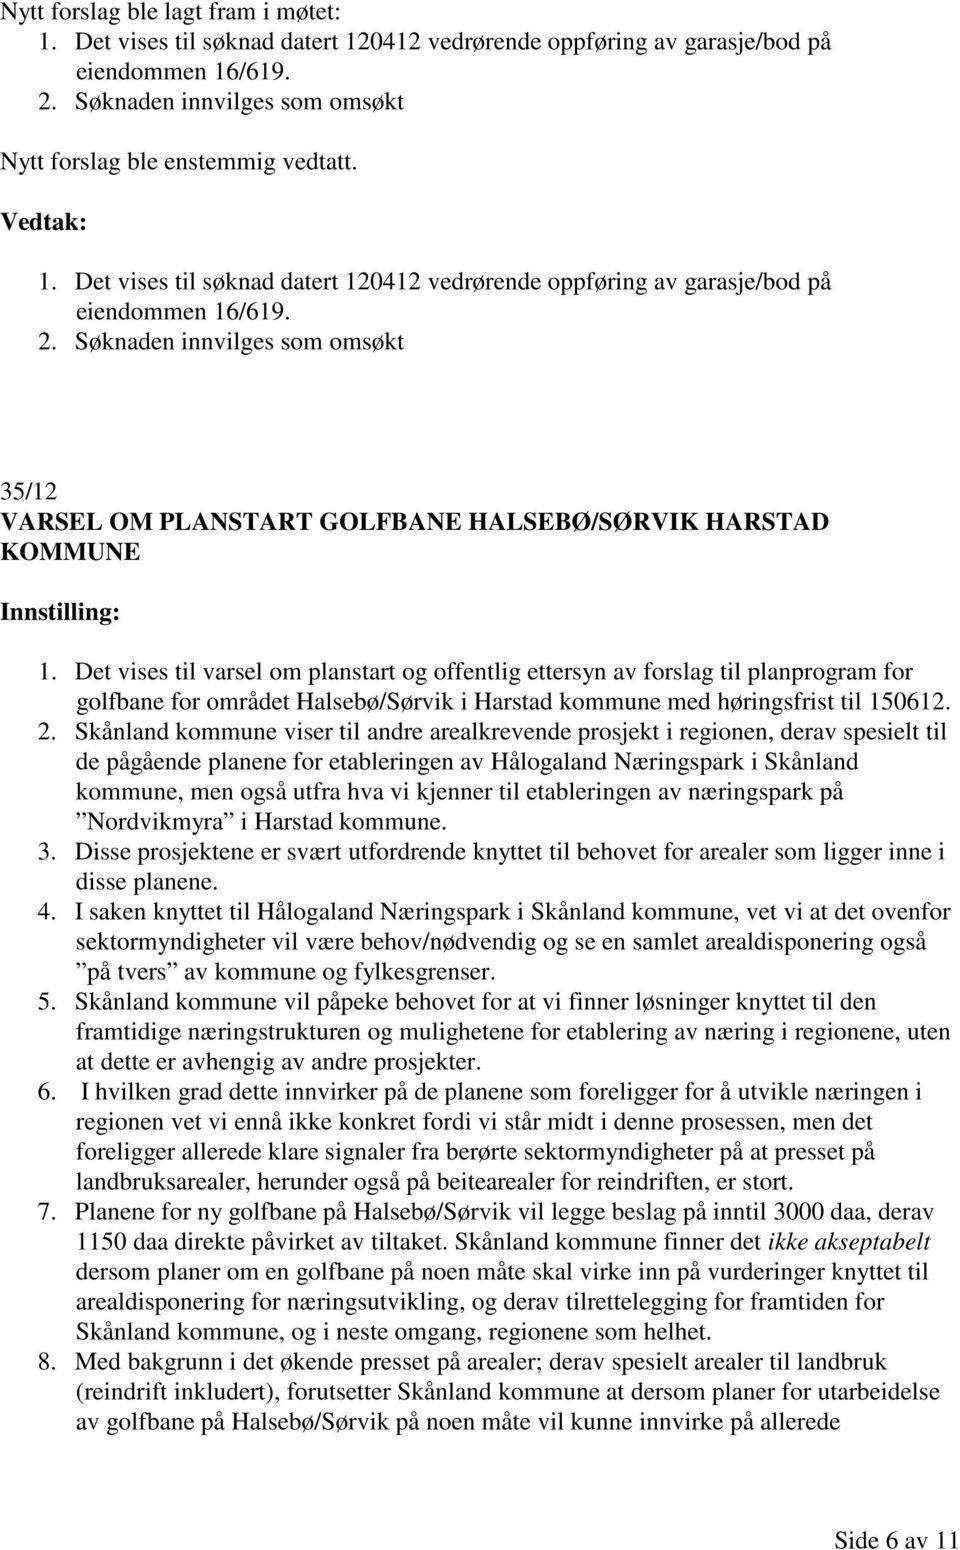 Det vises til varsel om planstart og offentlig ettersyn av forslag til planprogram for golfbane for området Halsebø/Sørvik i Harstad kommune med høringsfrist til 150612. 2.